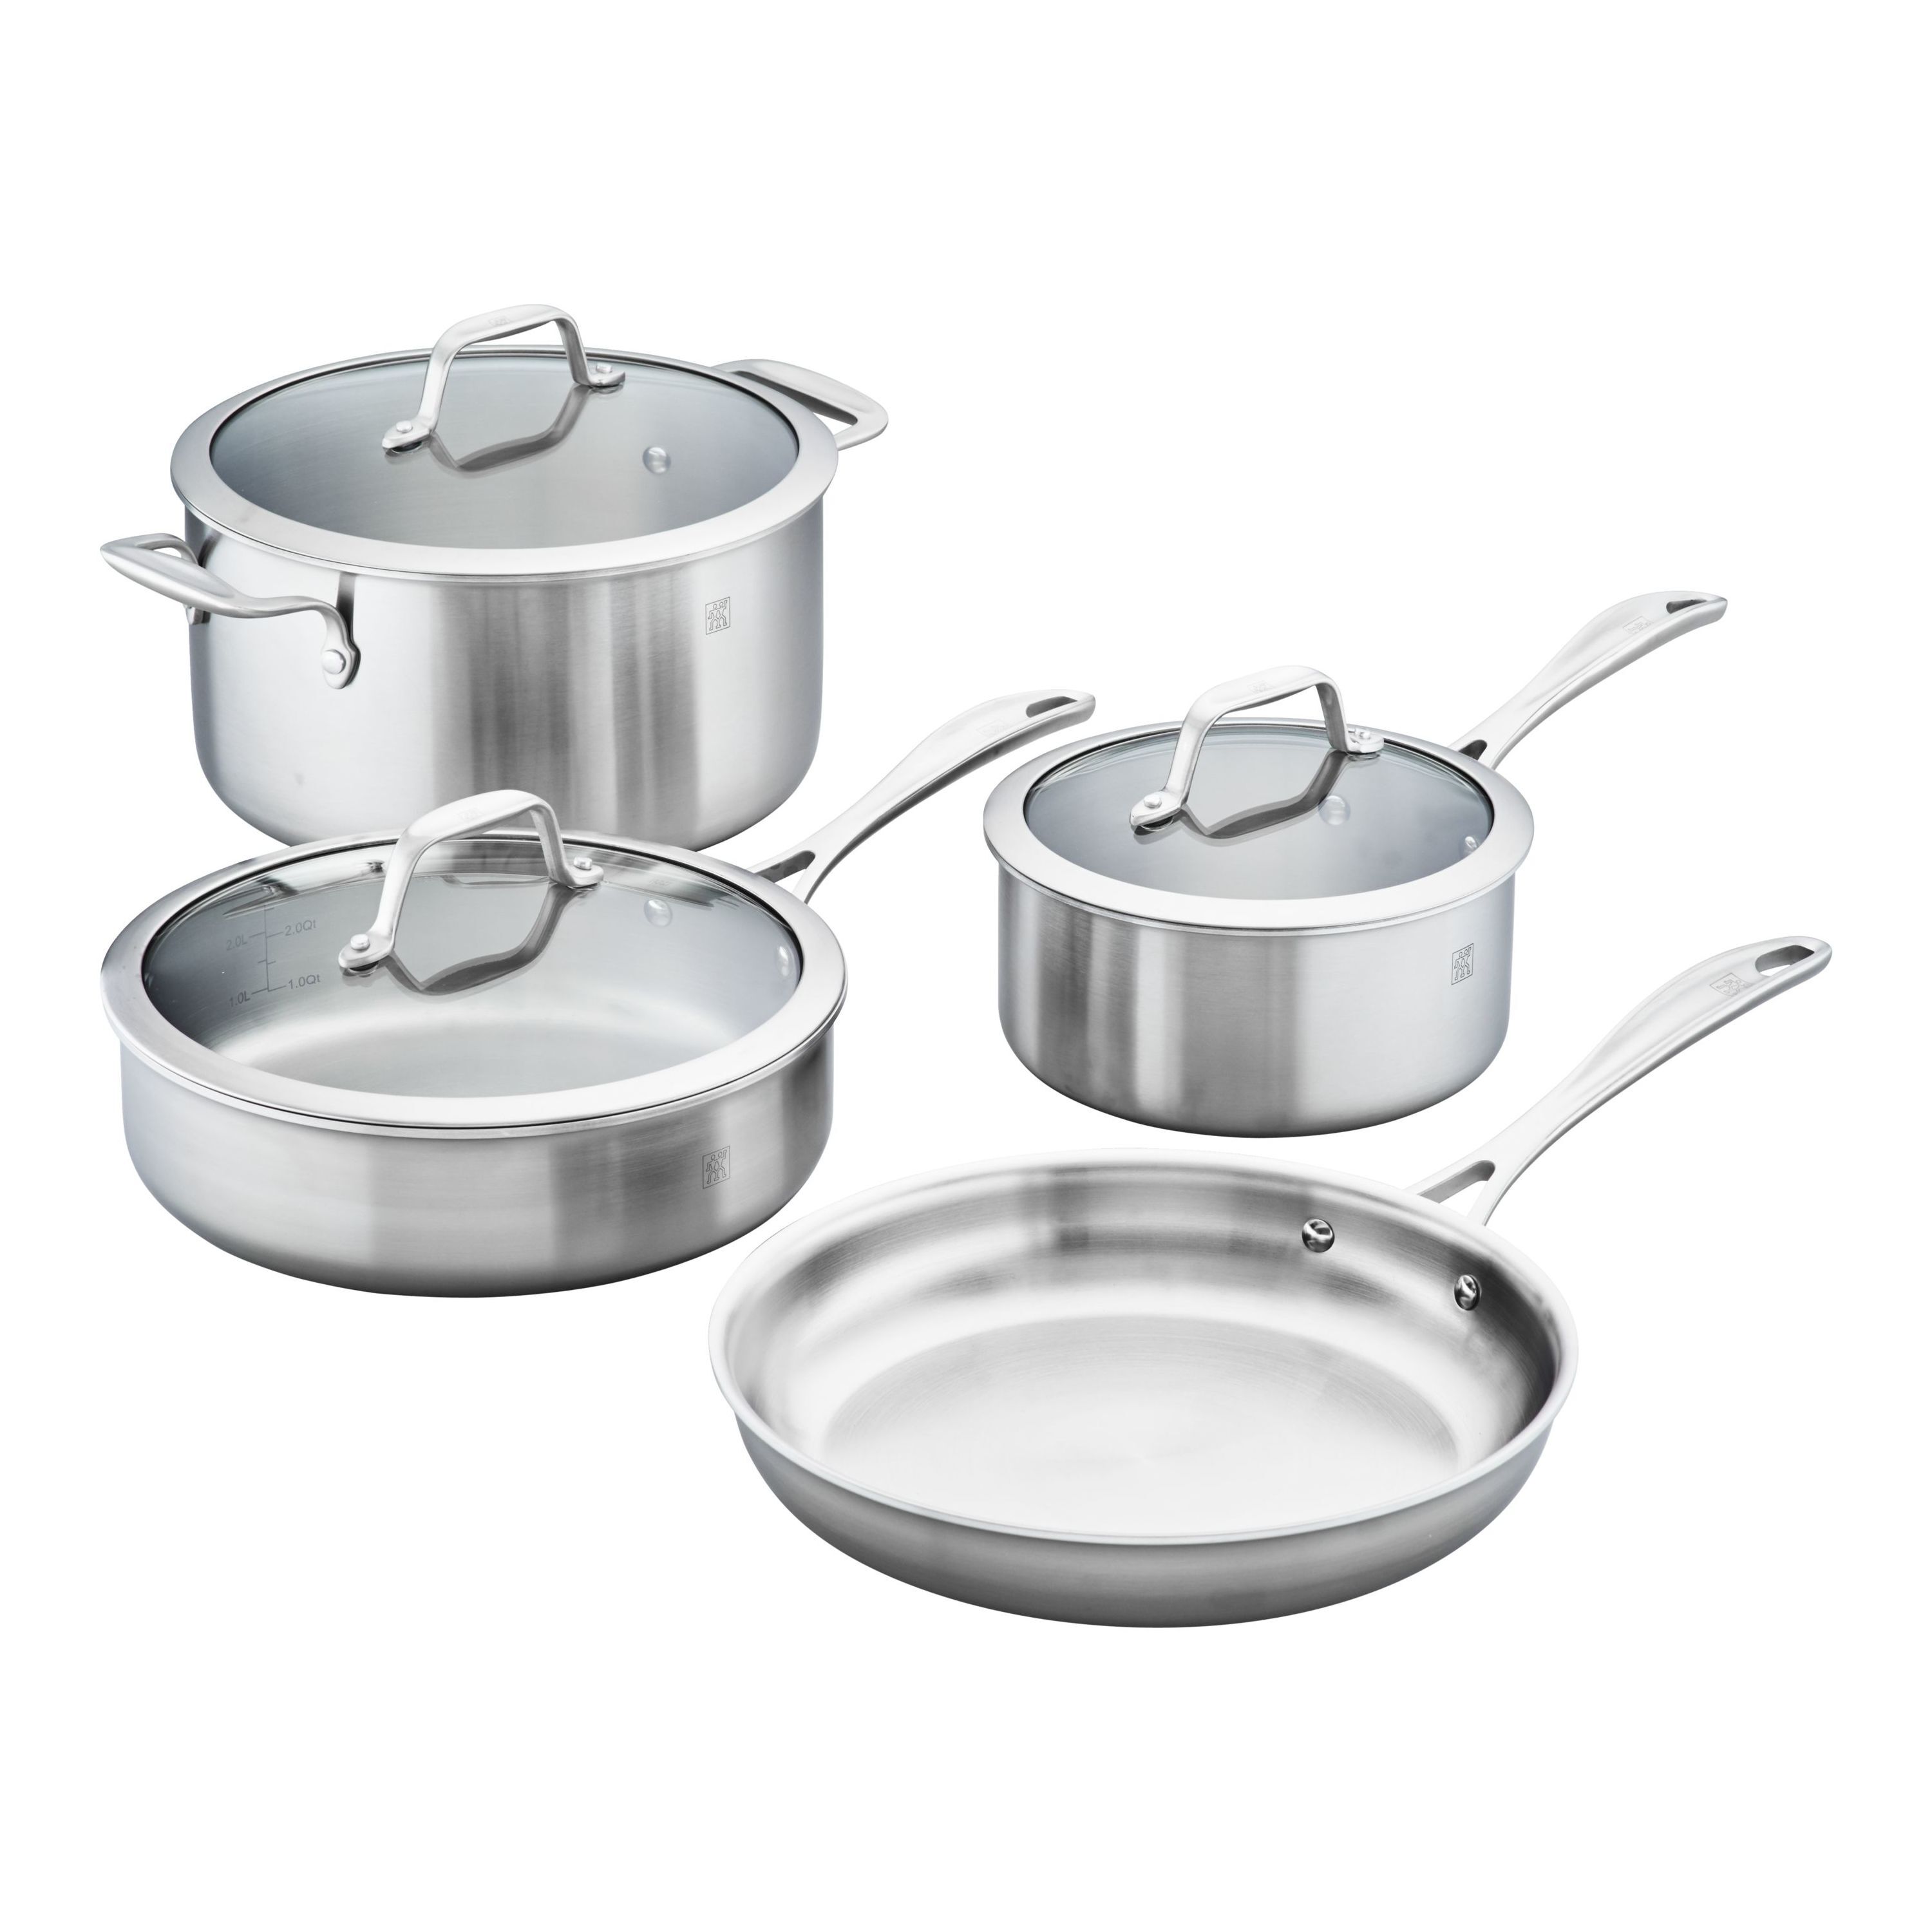 Pots & Pans Set - Cookware Sets | ZWILLING.COM